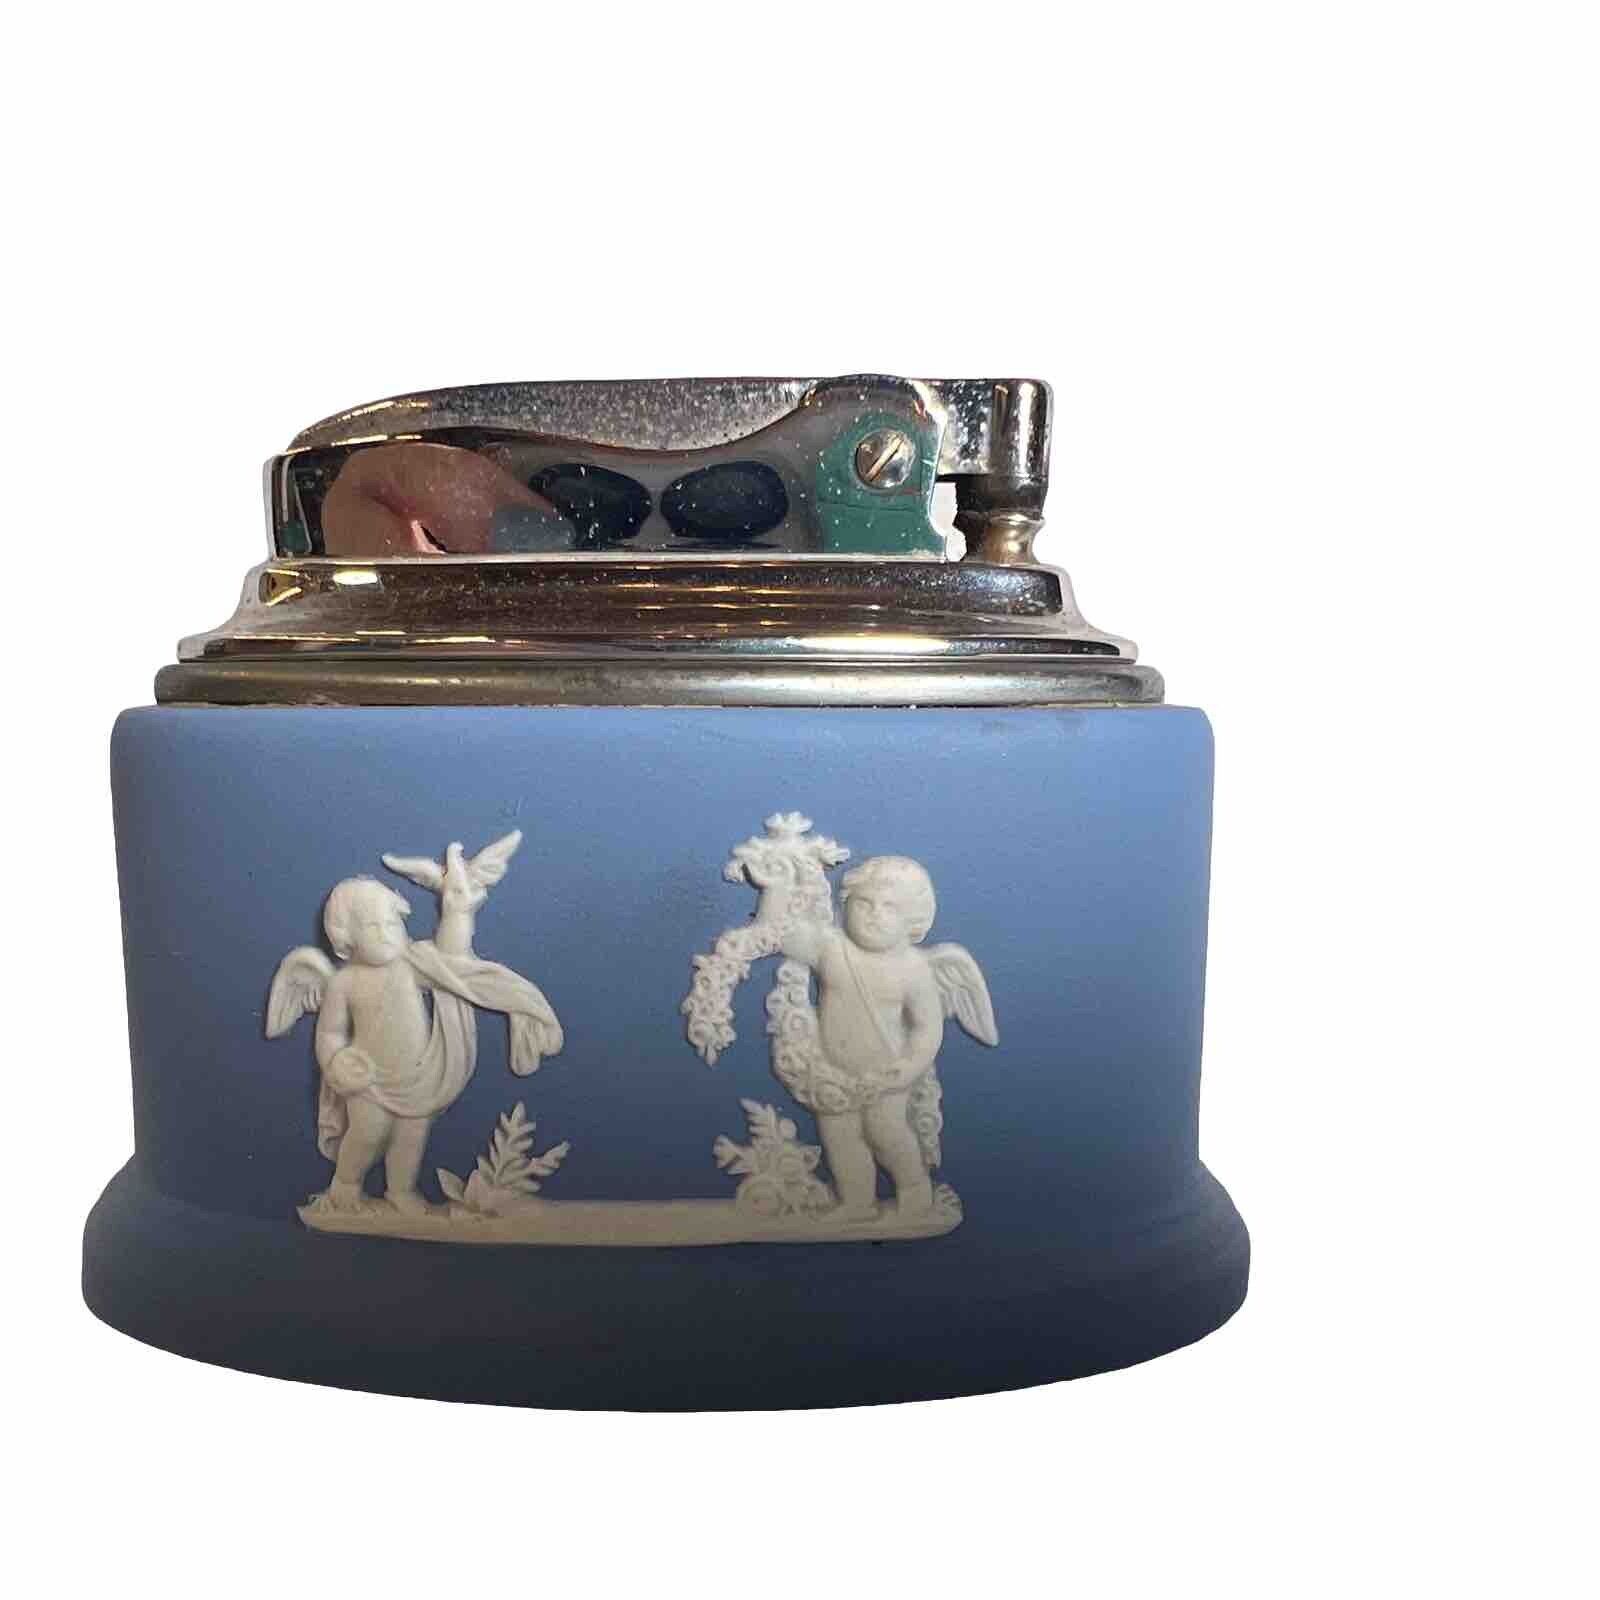 VTG Wedgwood Blue Jasperware Table Lighter Seasons Cherubs Ronson England 1950s